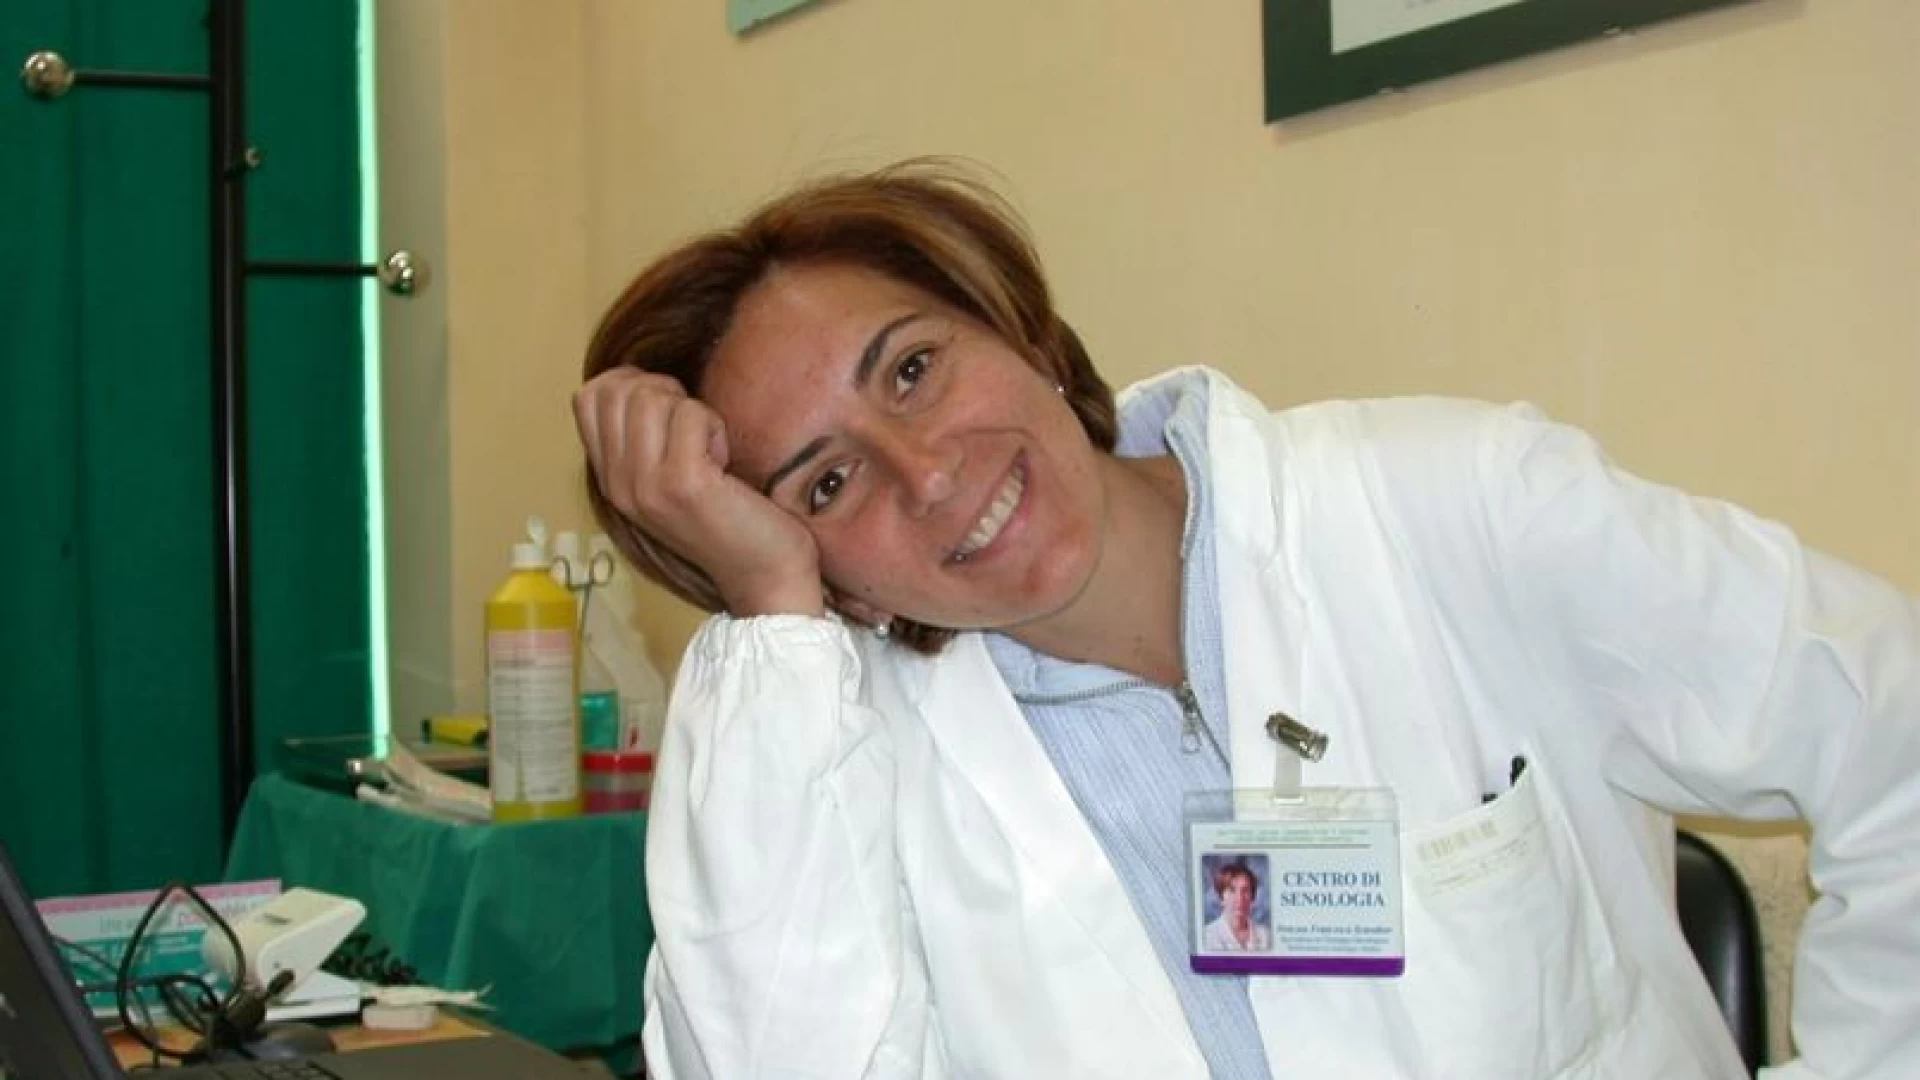 Isernia: Francesca Scarabeo scrive ai suoi elettori. “Decidere di candidarsi non è mai una scelta semplice. In campo per salvare la nostra sanità pubblica”.